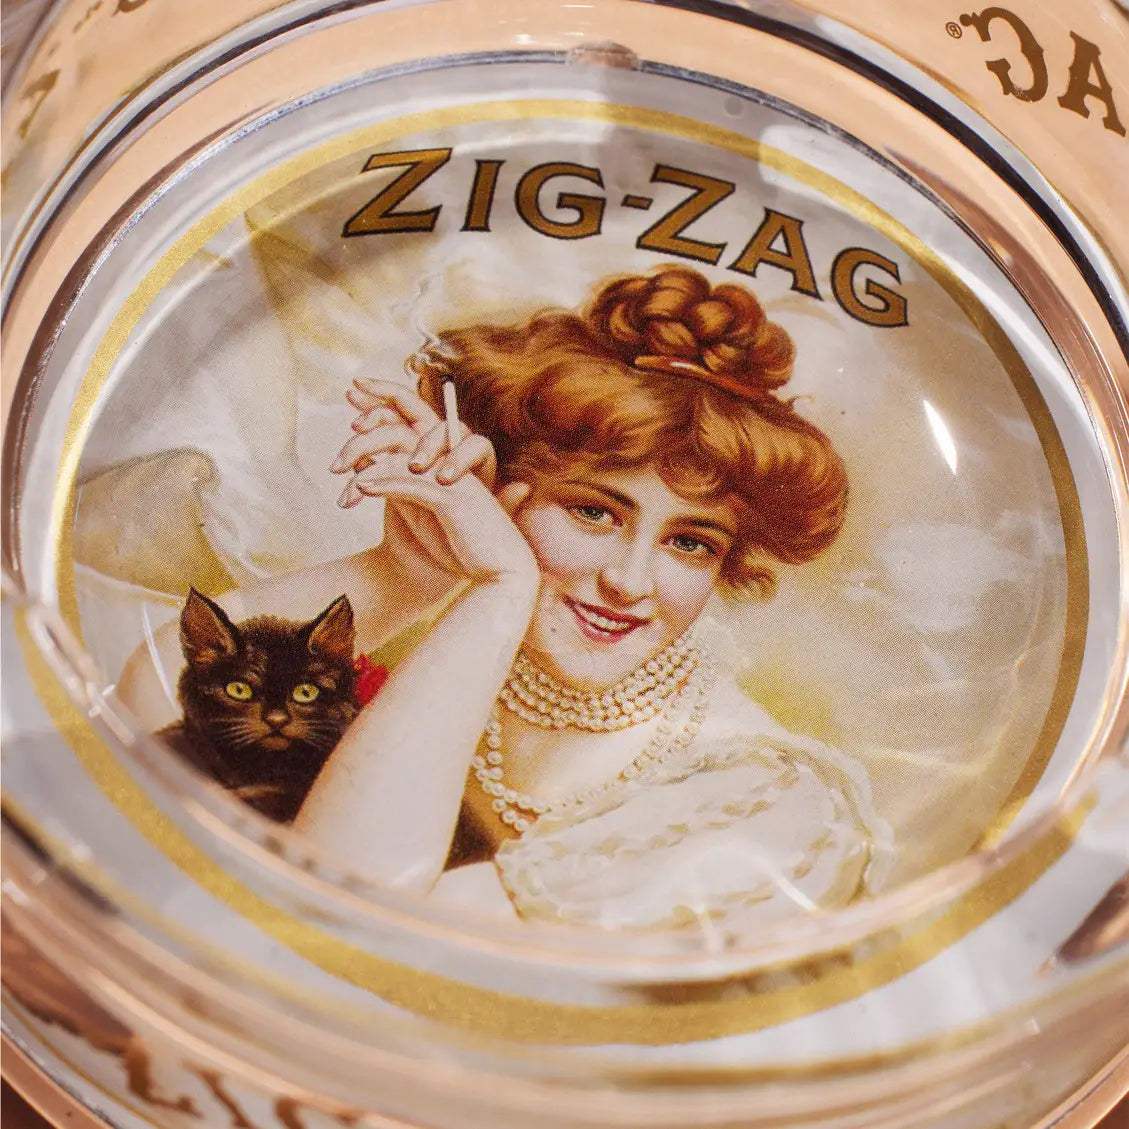 Zig-Zag Glass Ashtray - Vintage